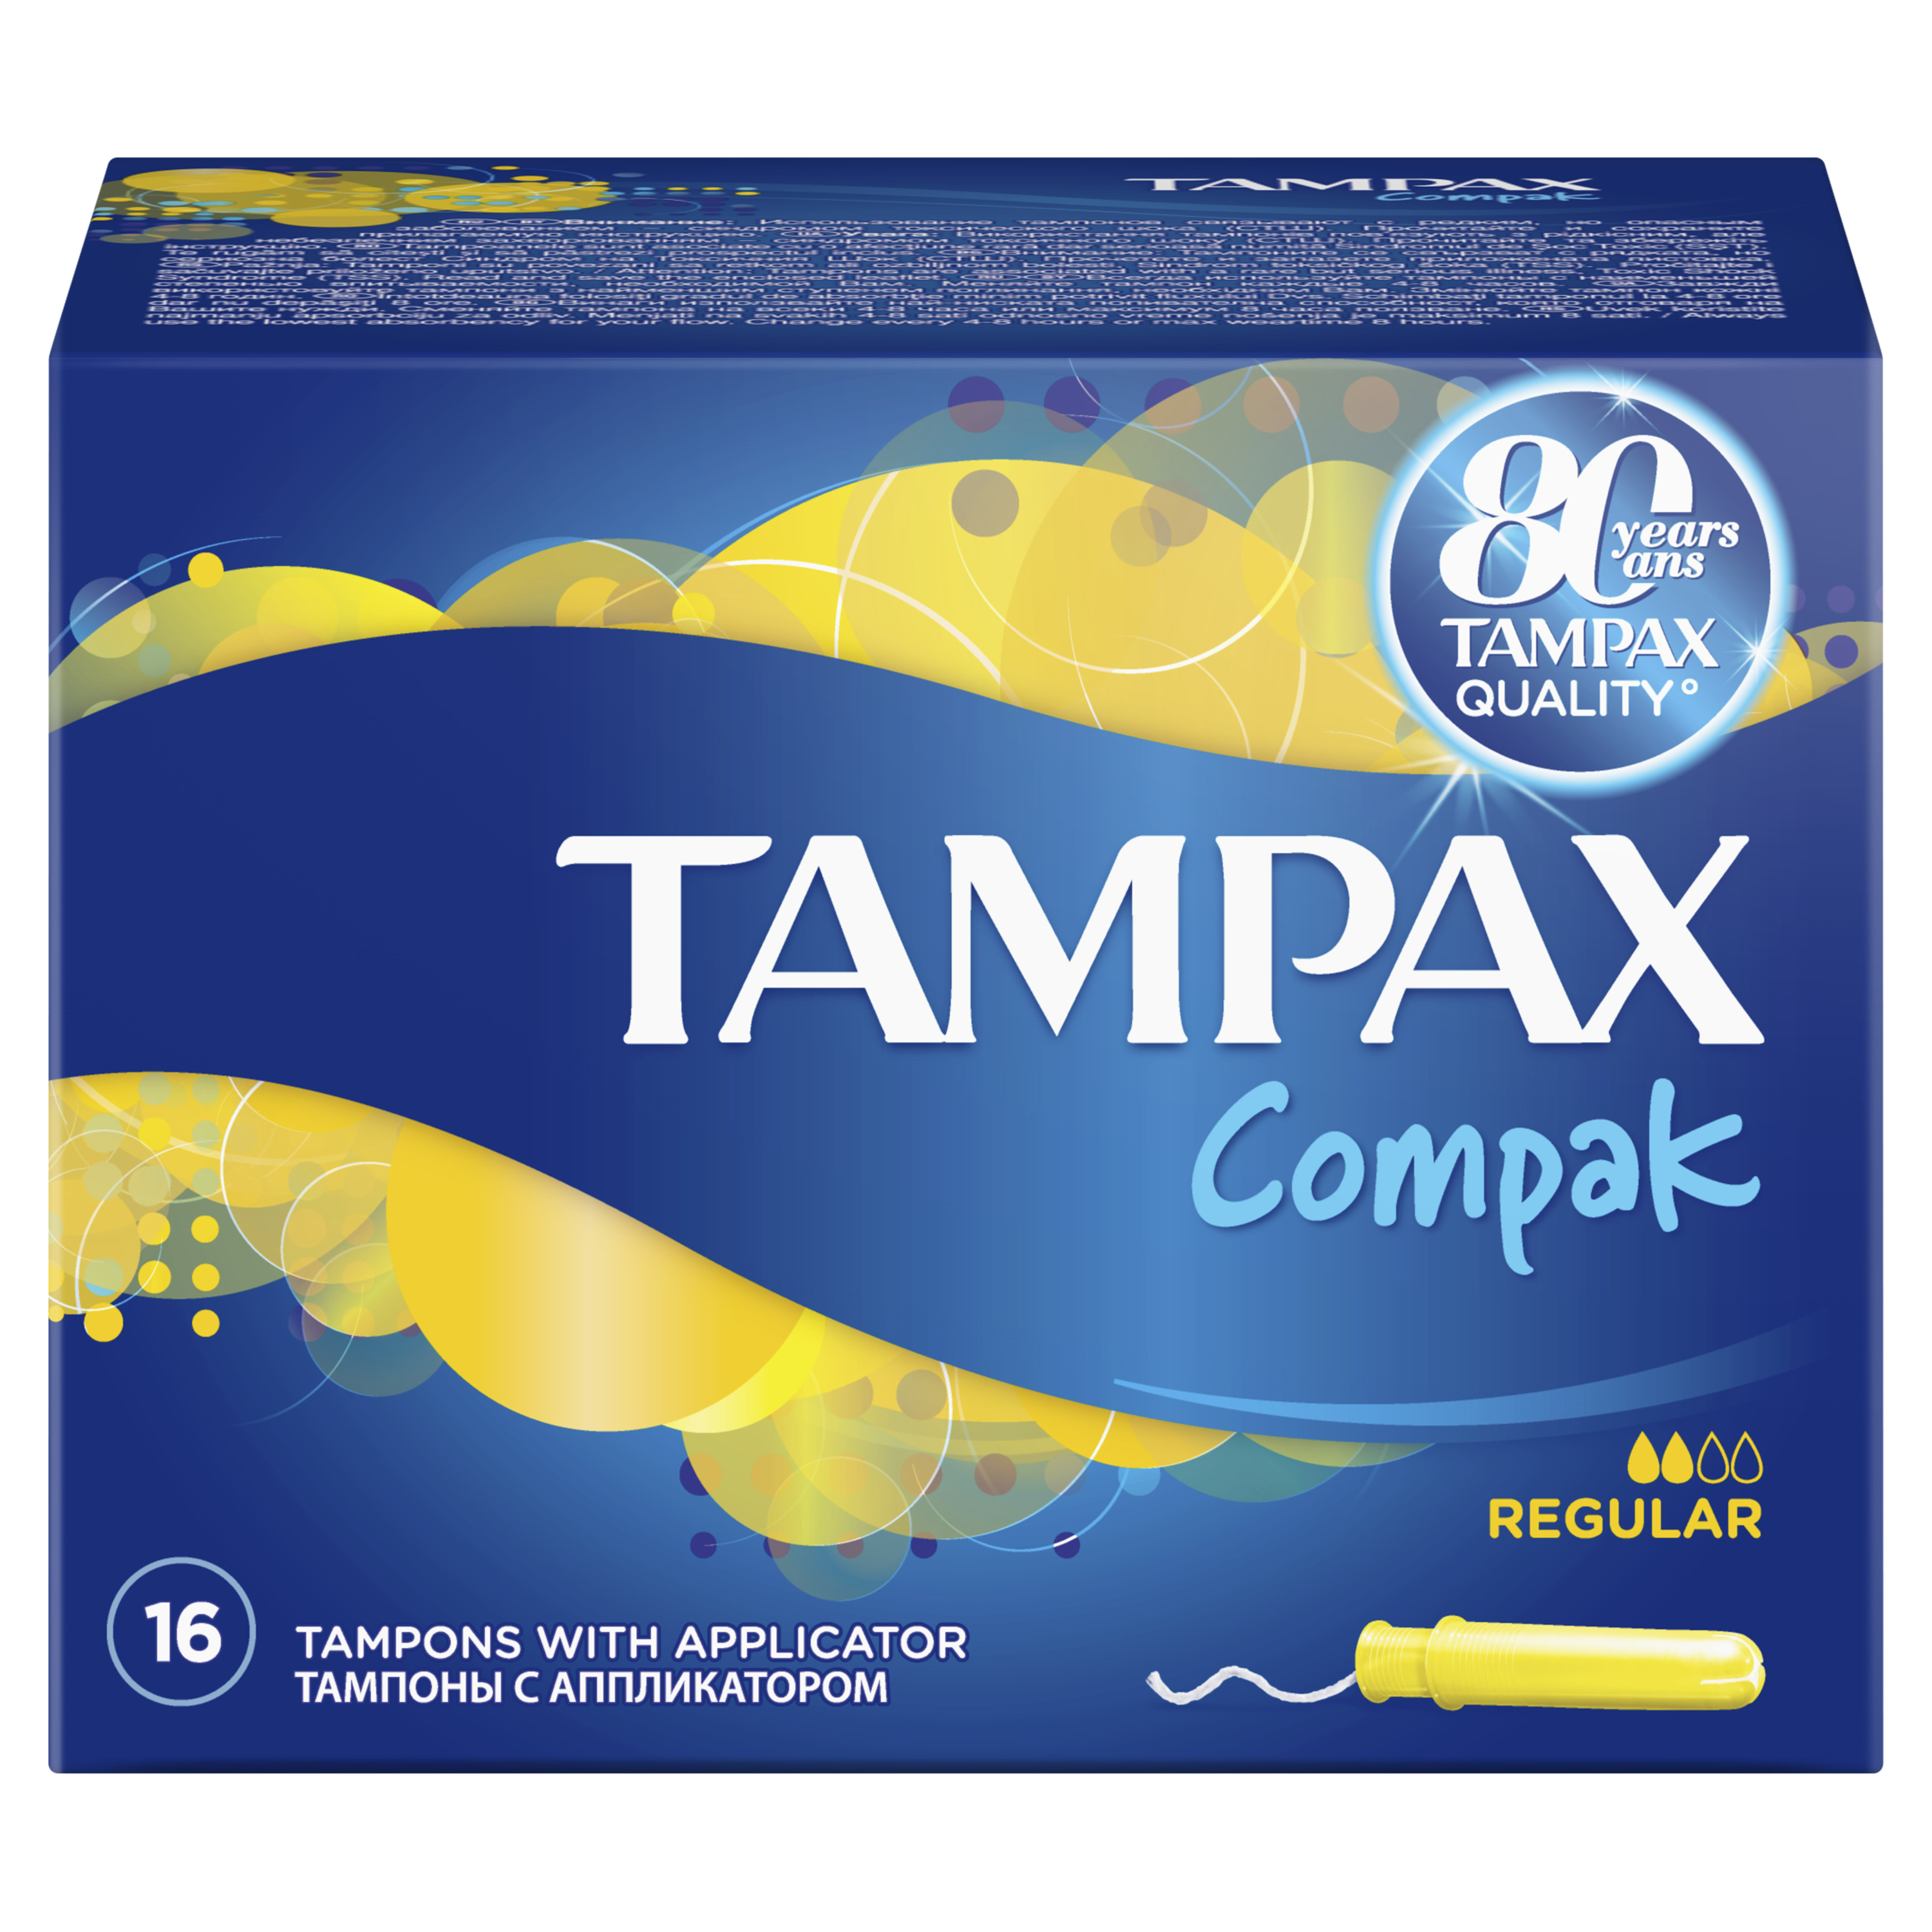 Тампоны Tampax Compak Regular Duo, с аппликатором, 16 шт. - фото 4